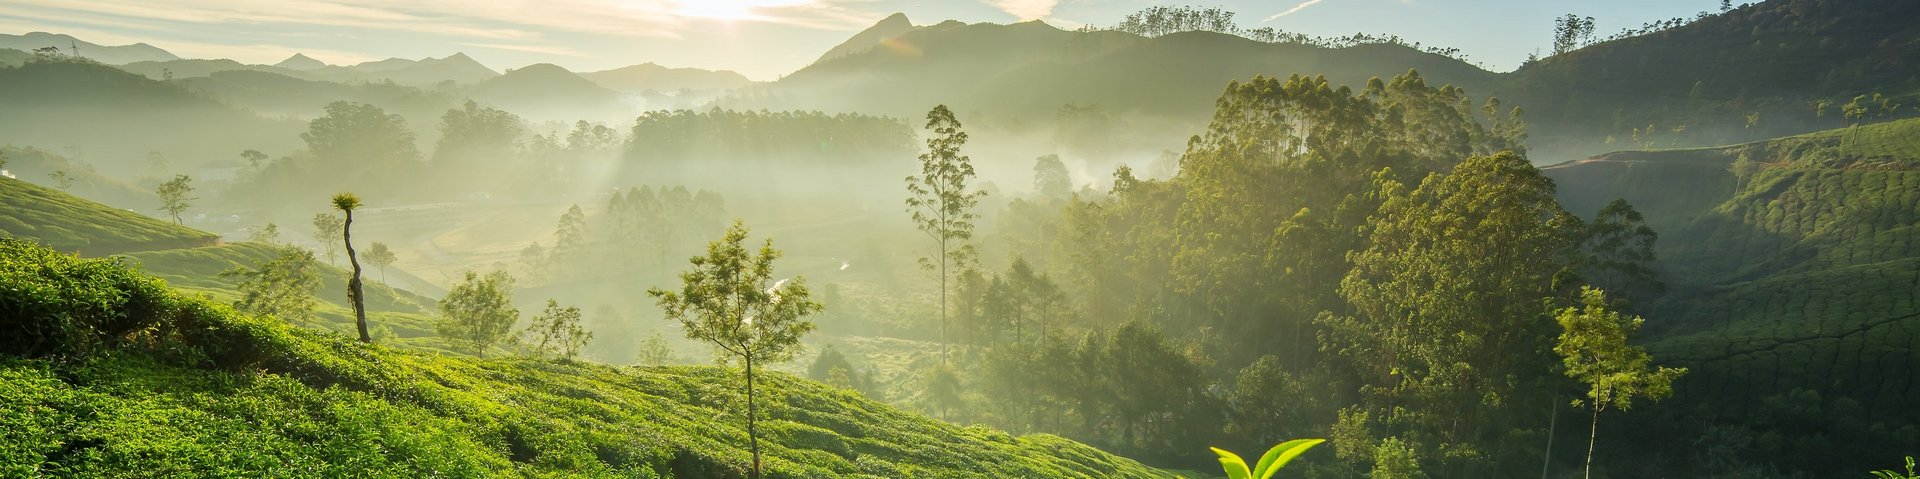 Die Sonne geht über den grünen Teeplantagen in Munnar in Kerala (Indien) auf